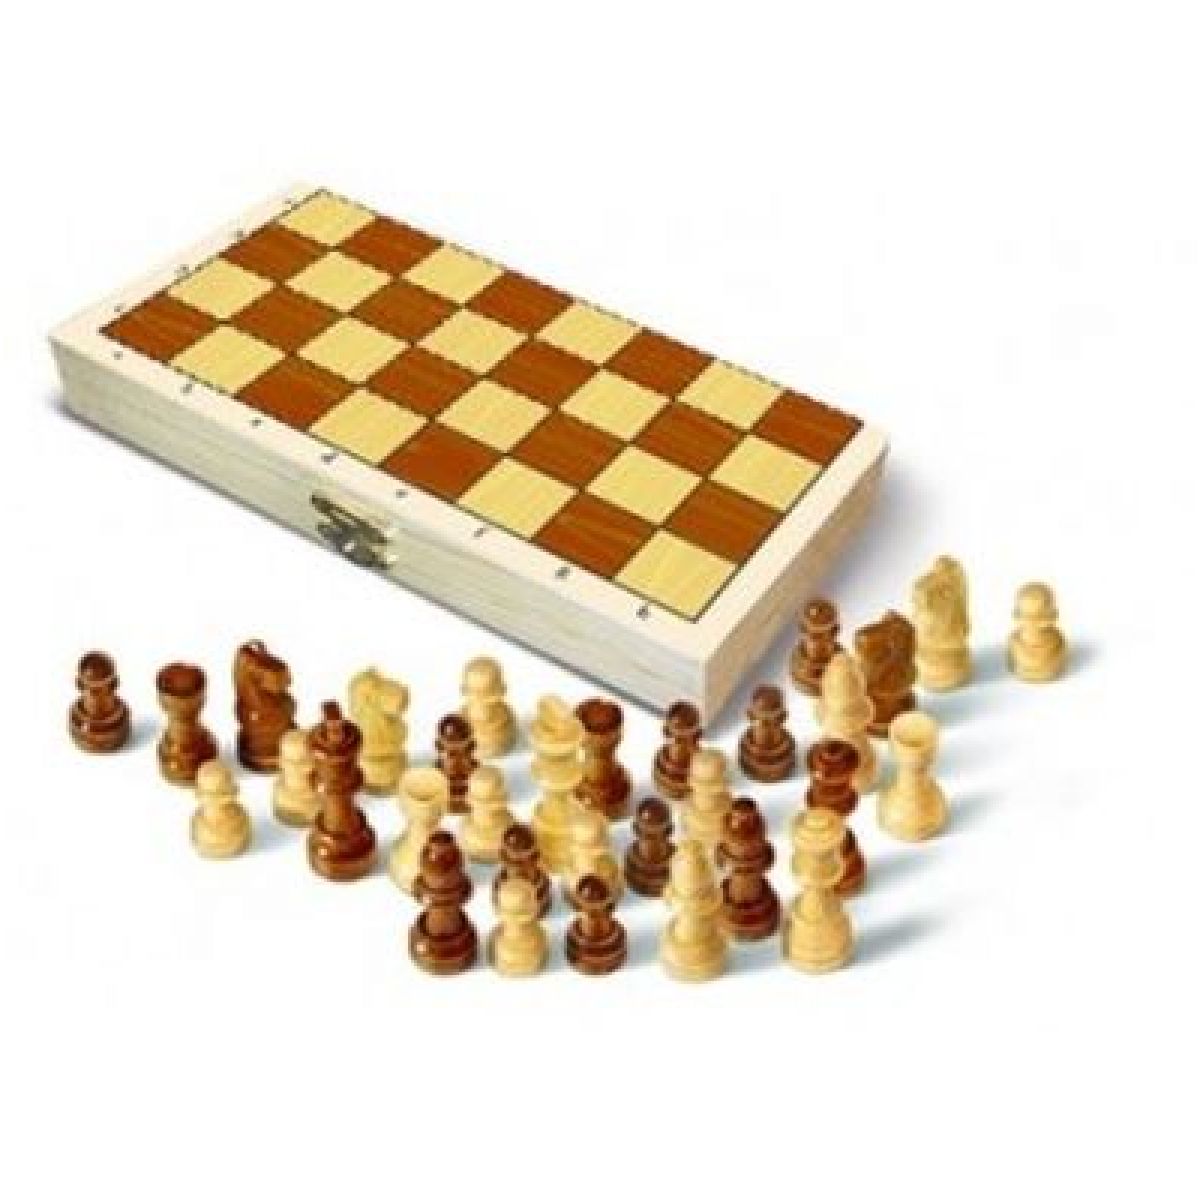 BONAPARTE 75405 - Šachy - magnetická stolní hra